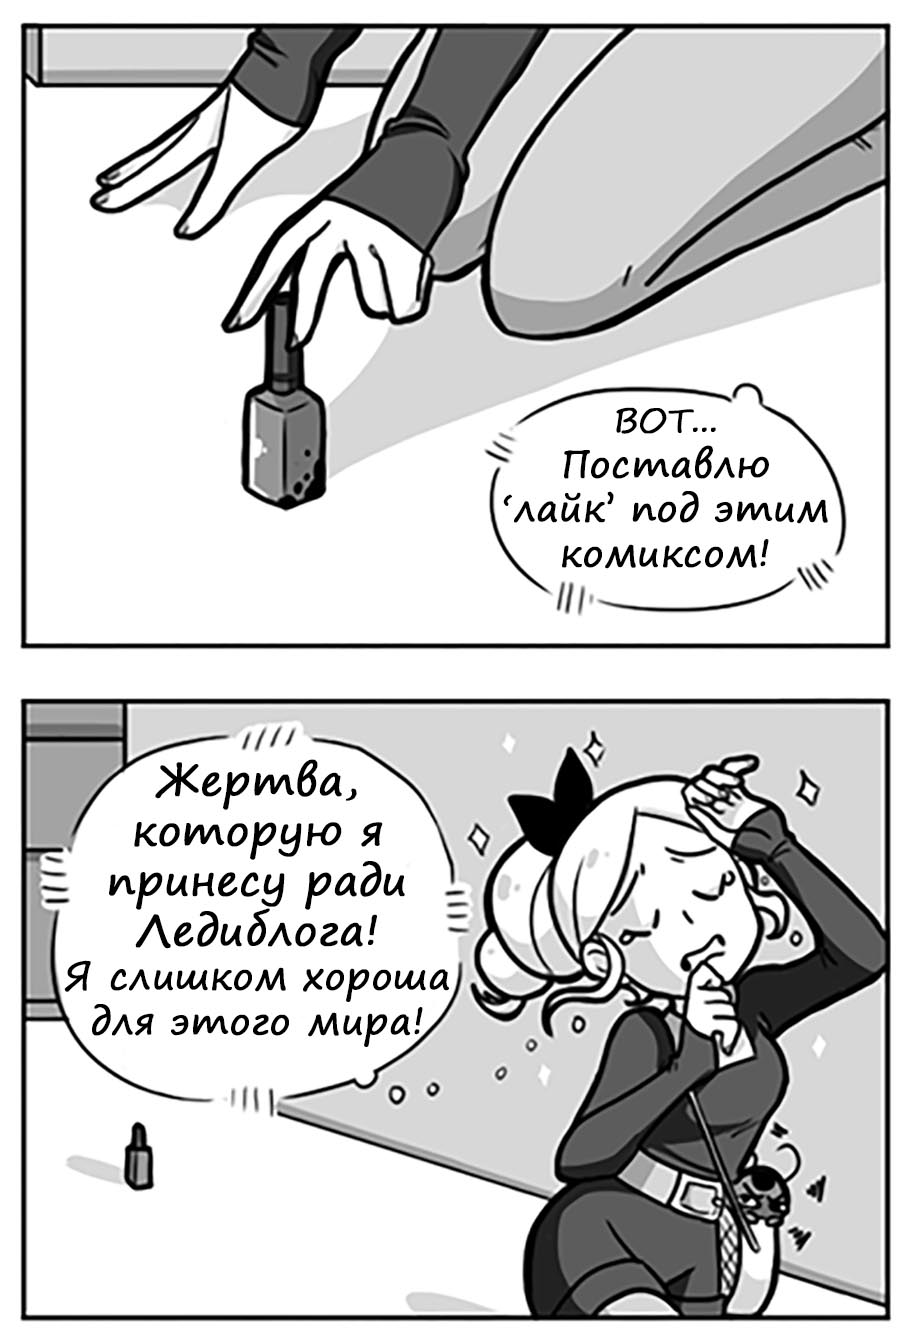 Комикс Леди Баг и Супер-Кот Скарлет Леди 37 МЕМ